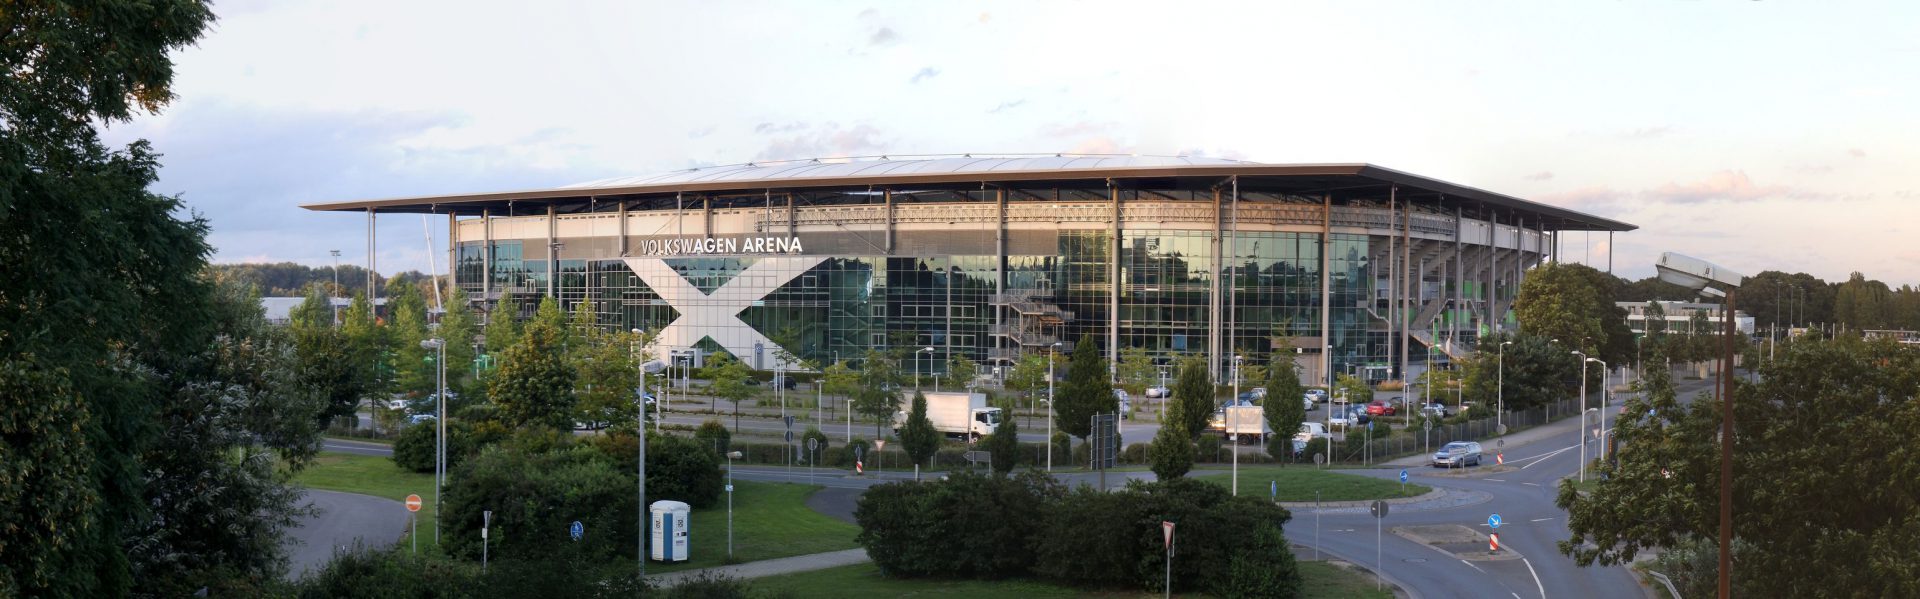 Volkwagen Arena